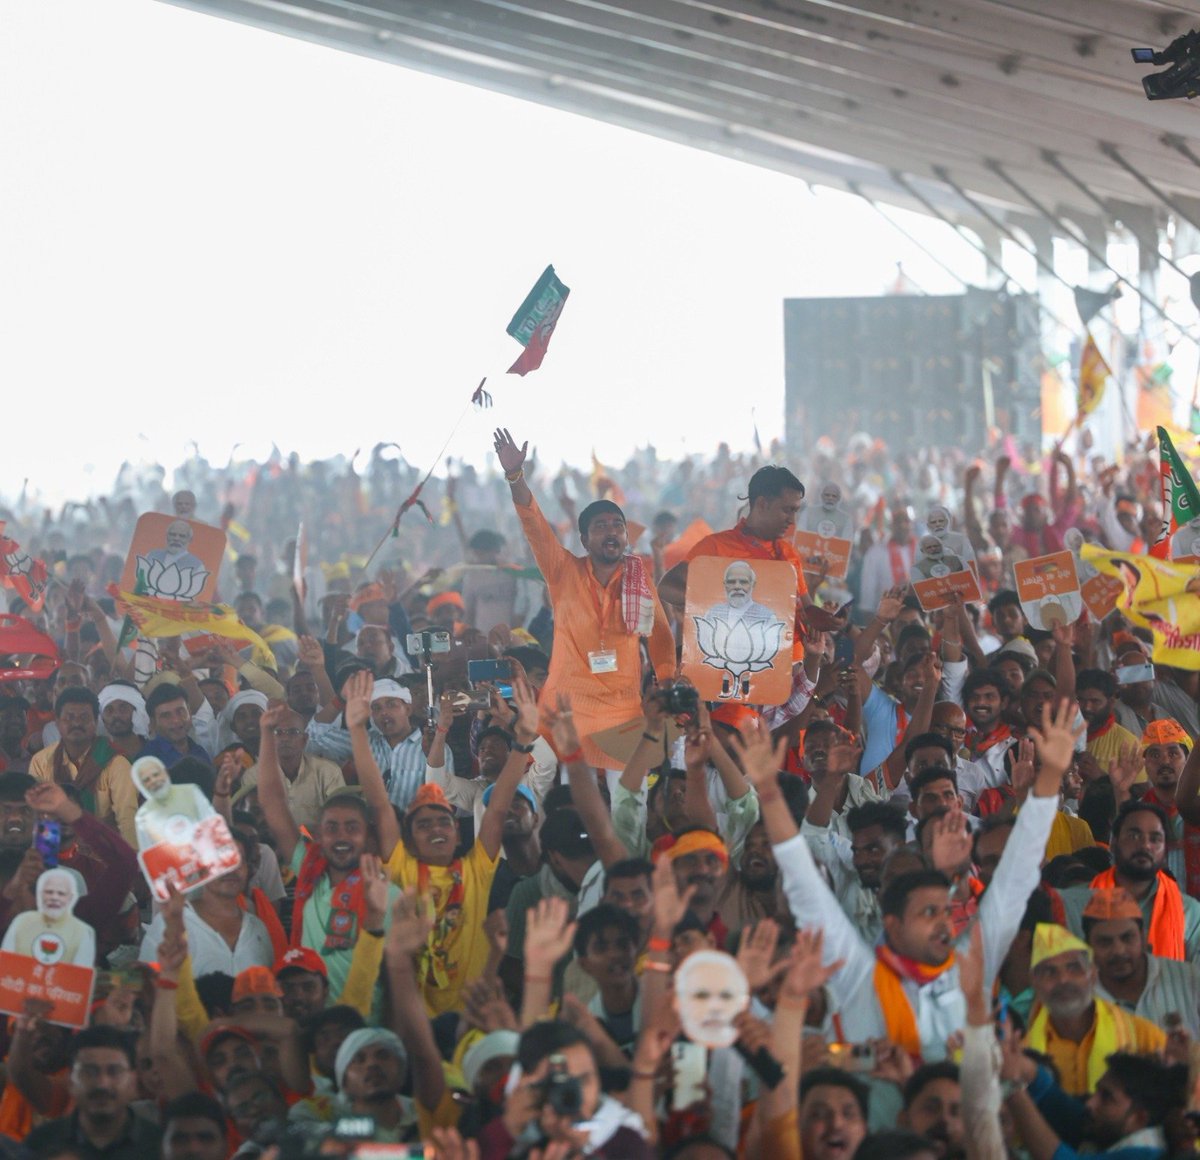 घोसी के साथ ही उत्तर प्रदेश में जनता-जनार्दन का जोश और उत्साह बता रहा है कि यहां BJP-NDA को प्रचंड जीत मिलने जा रही है।